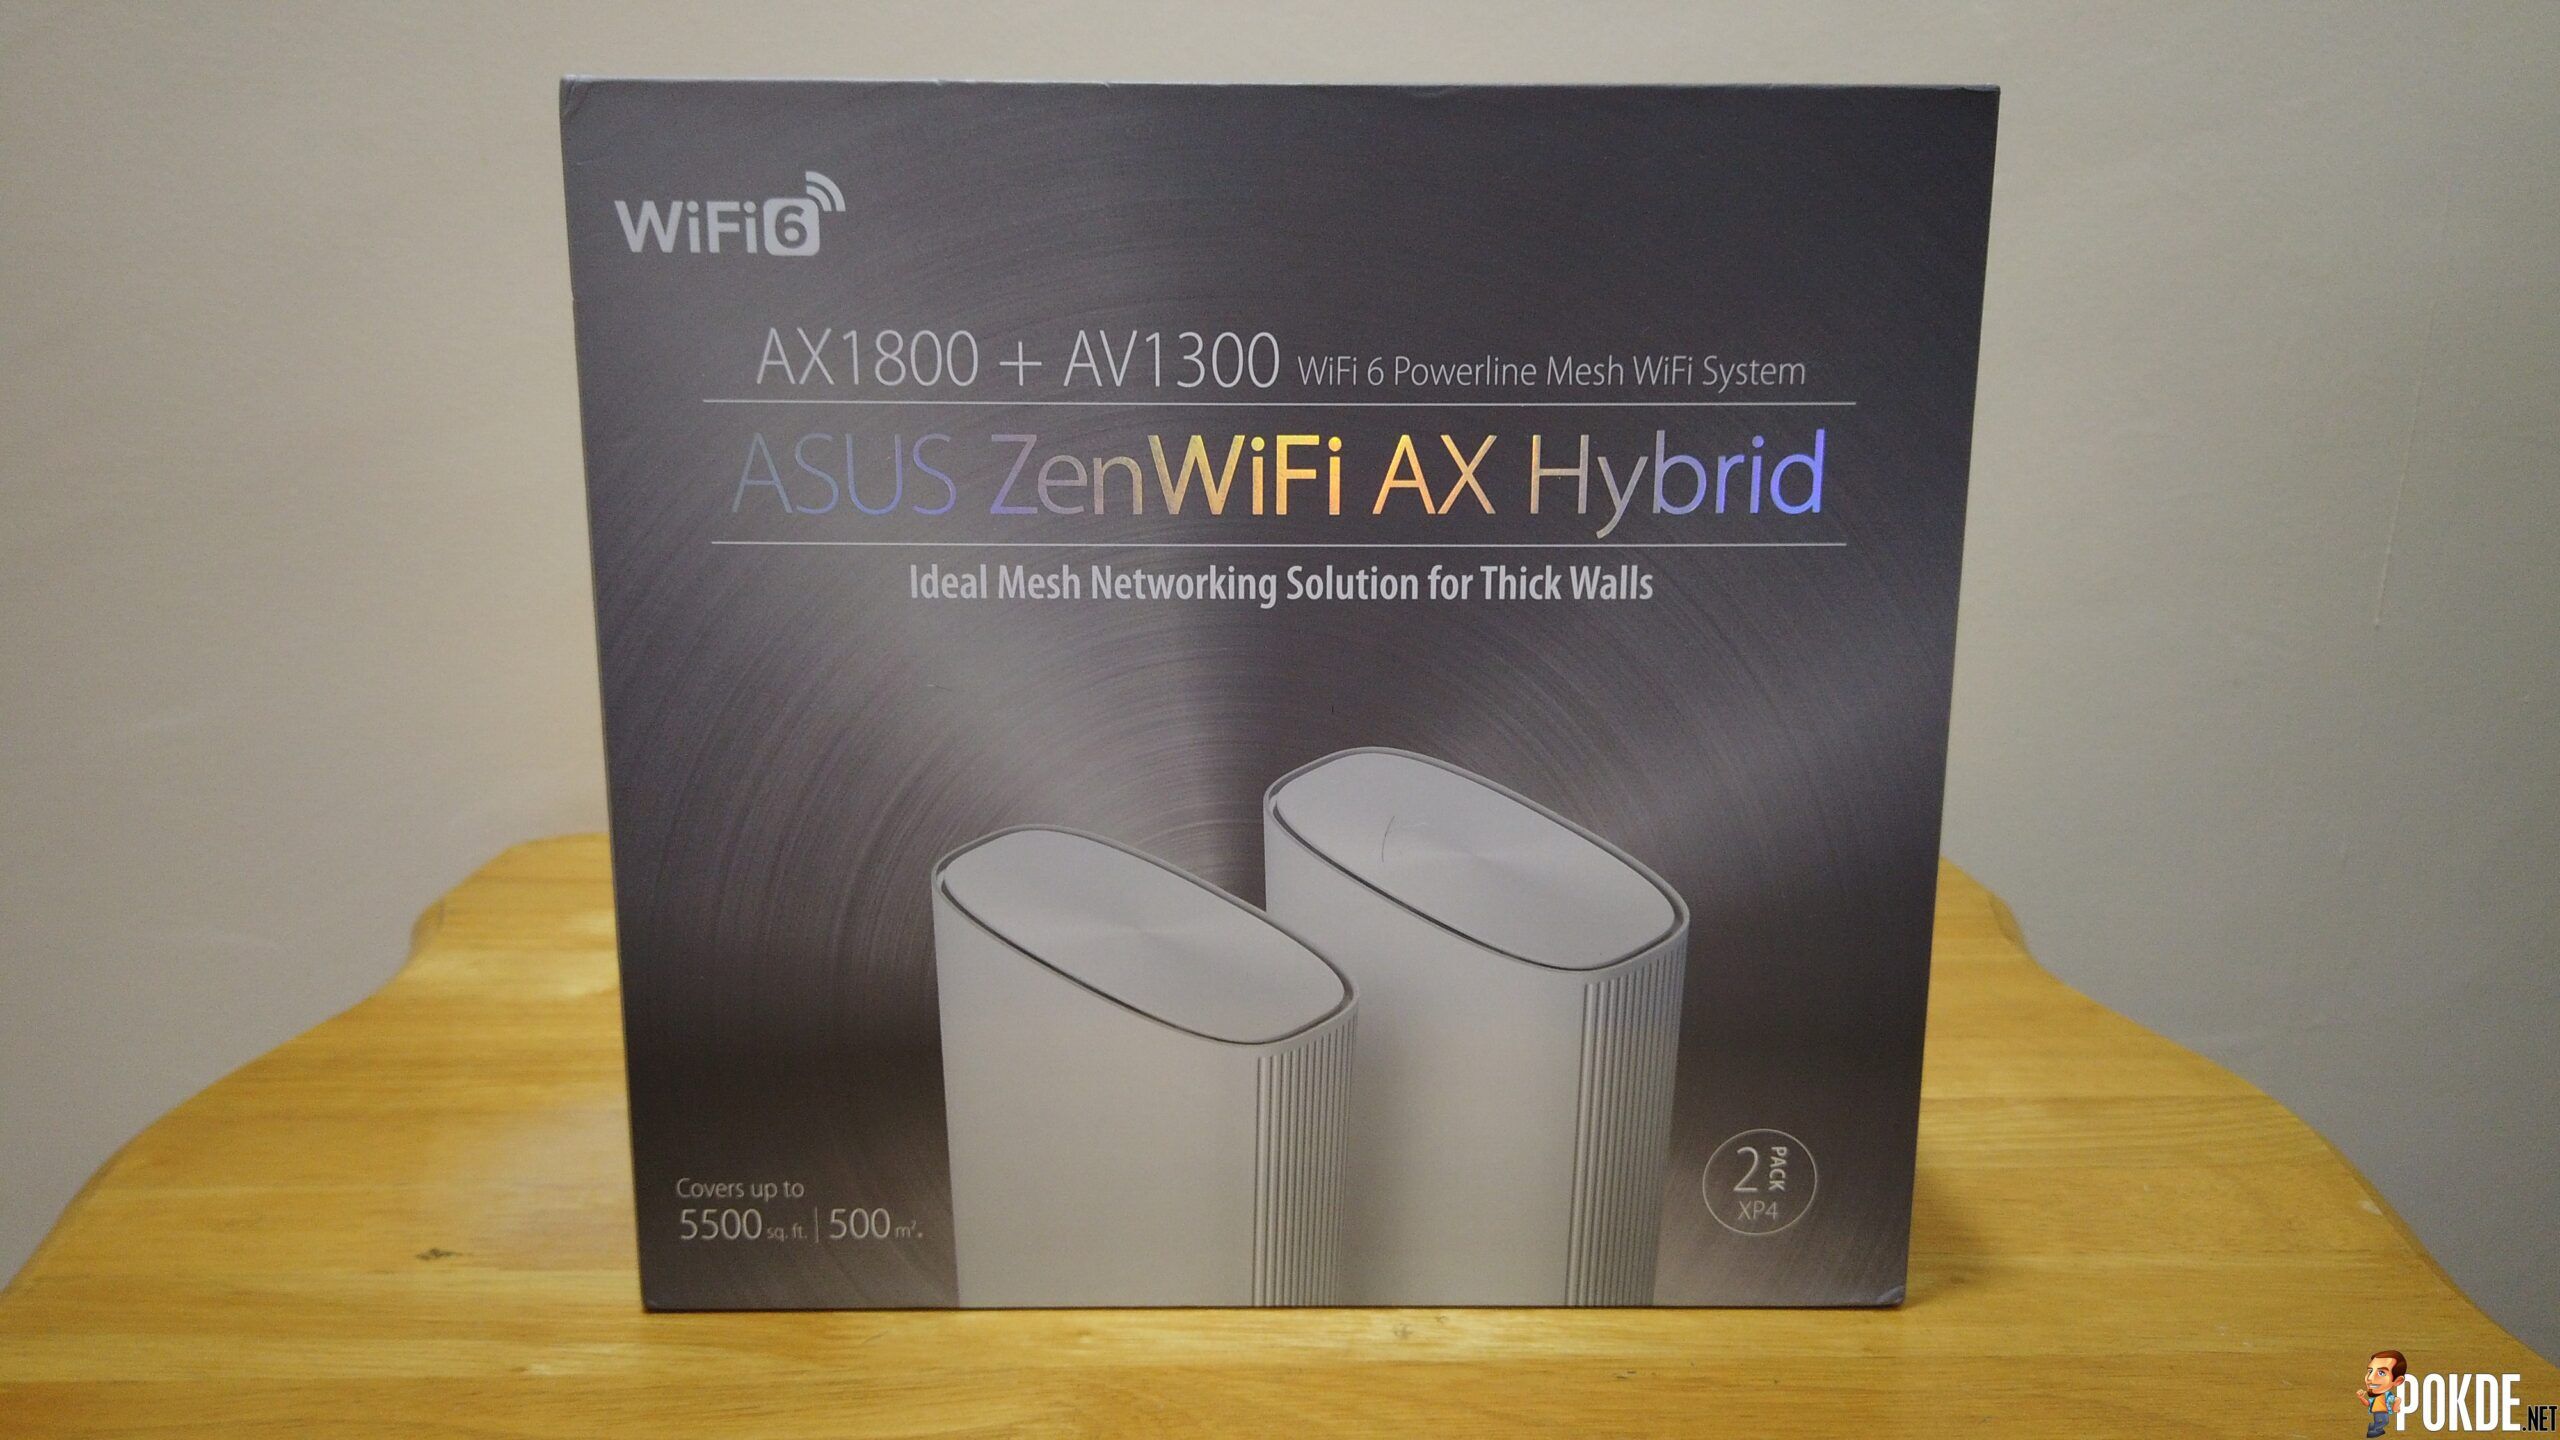 ASUS ZenWiFi AX Hybrid (XP4) Mesh Review - 5,500 sqft Wi-Fi Coverage 21